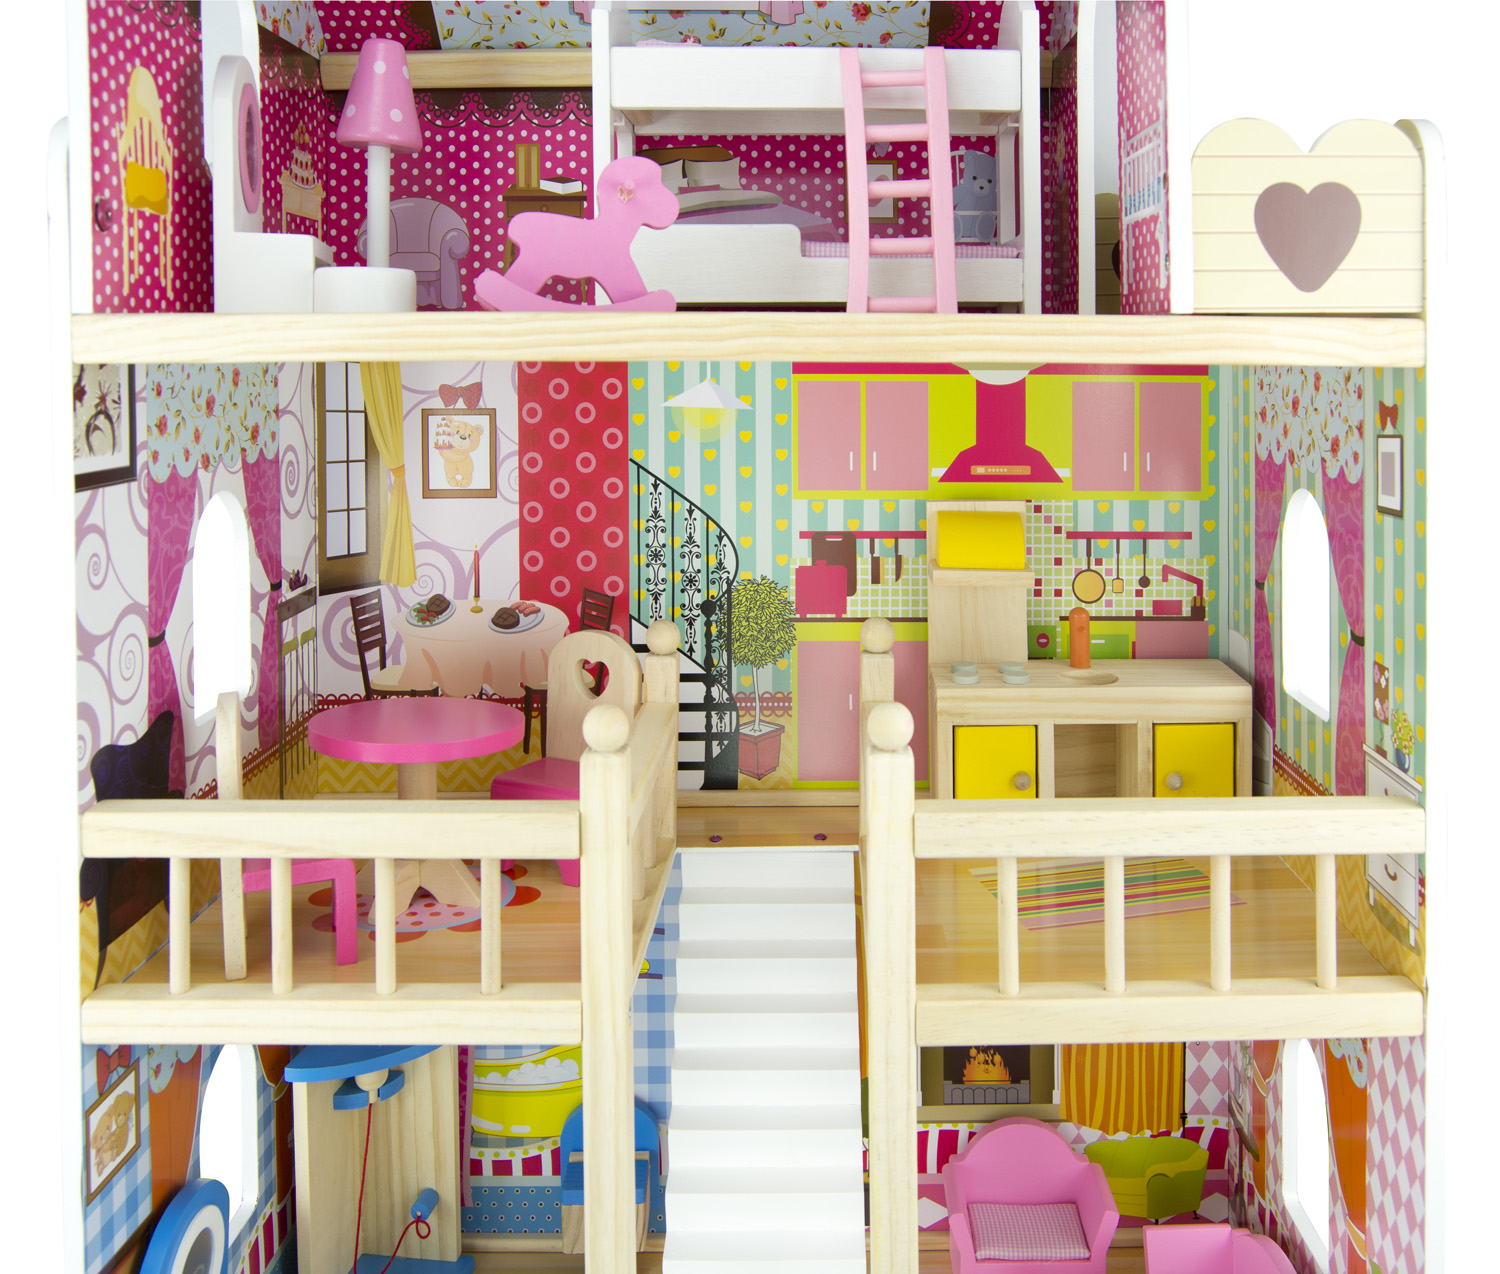 Casa de muñecas de madera en rosa, 62 x 27 x 70 cm